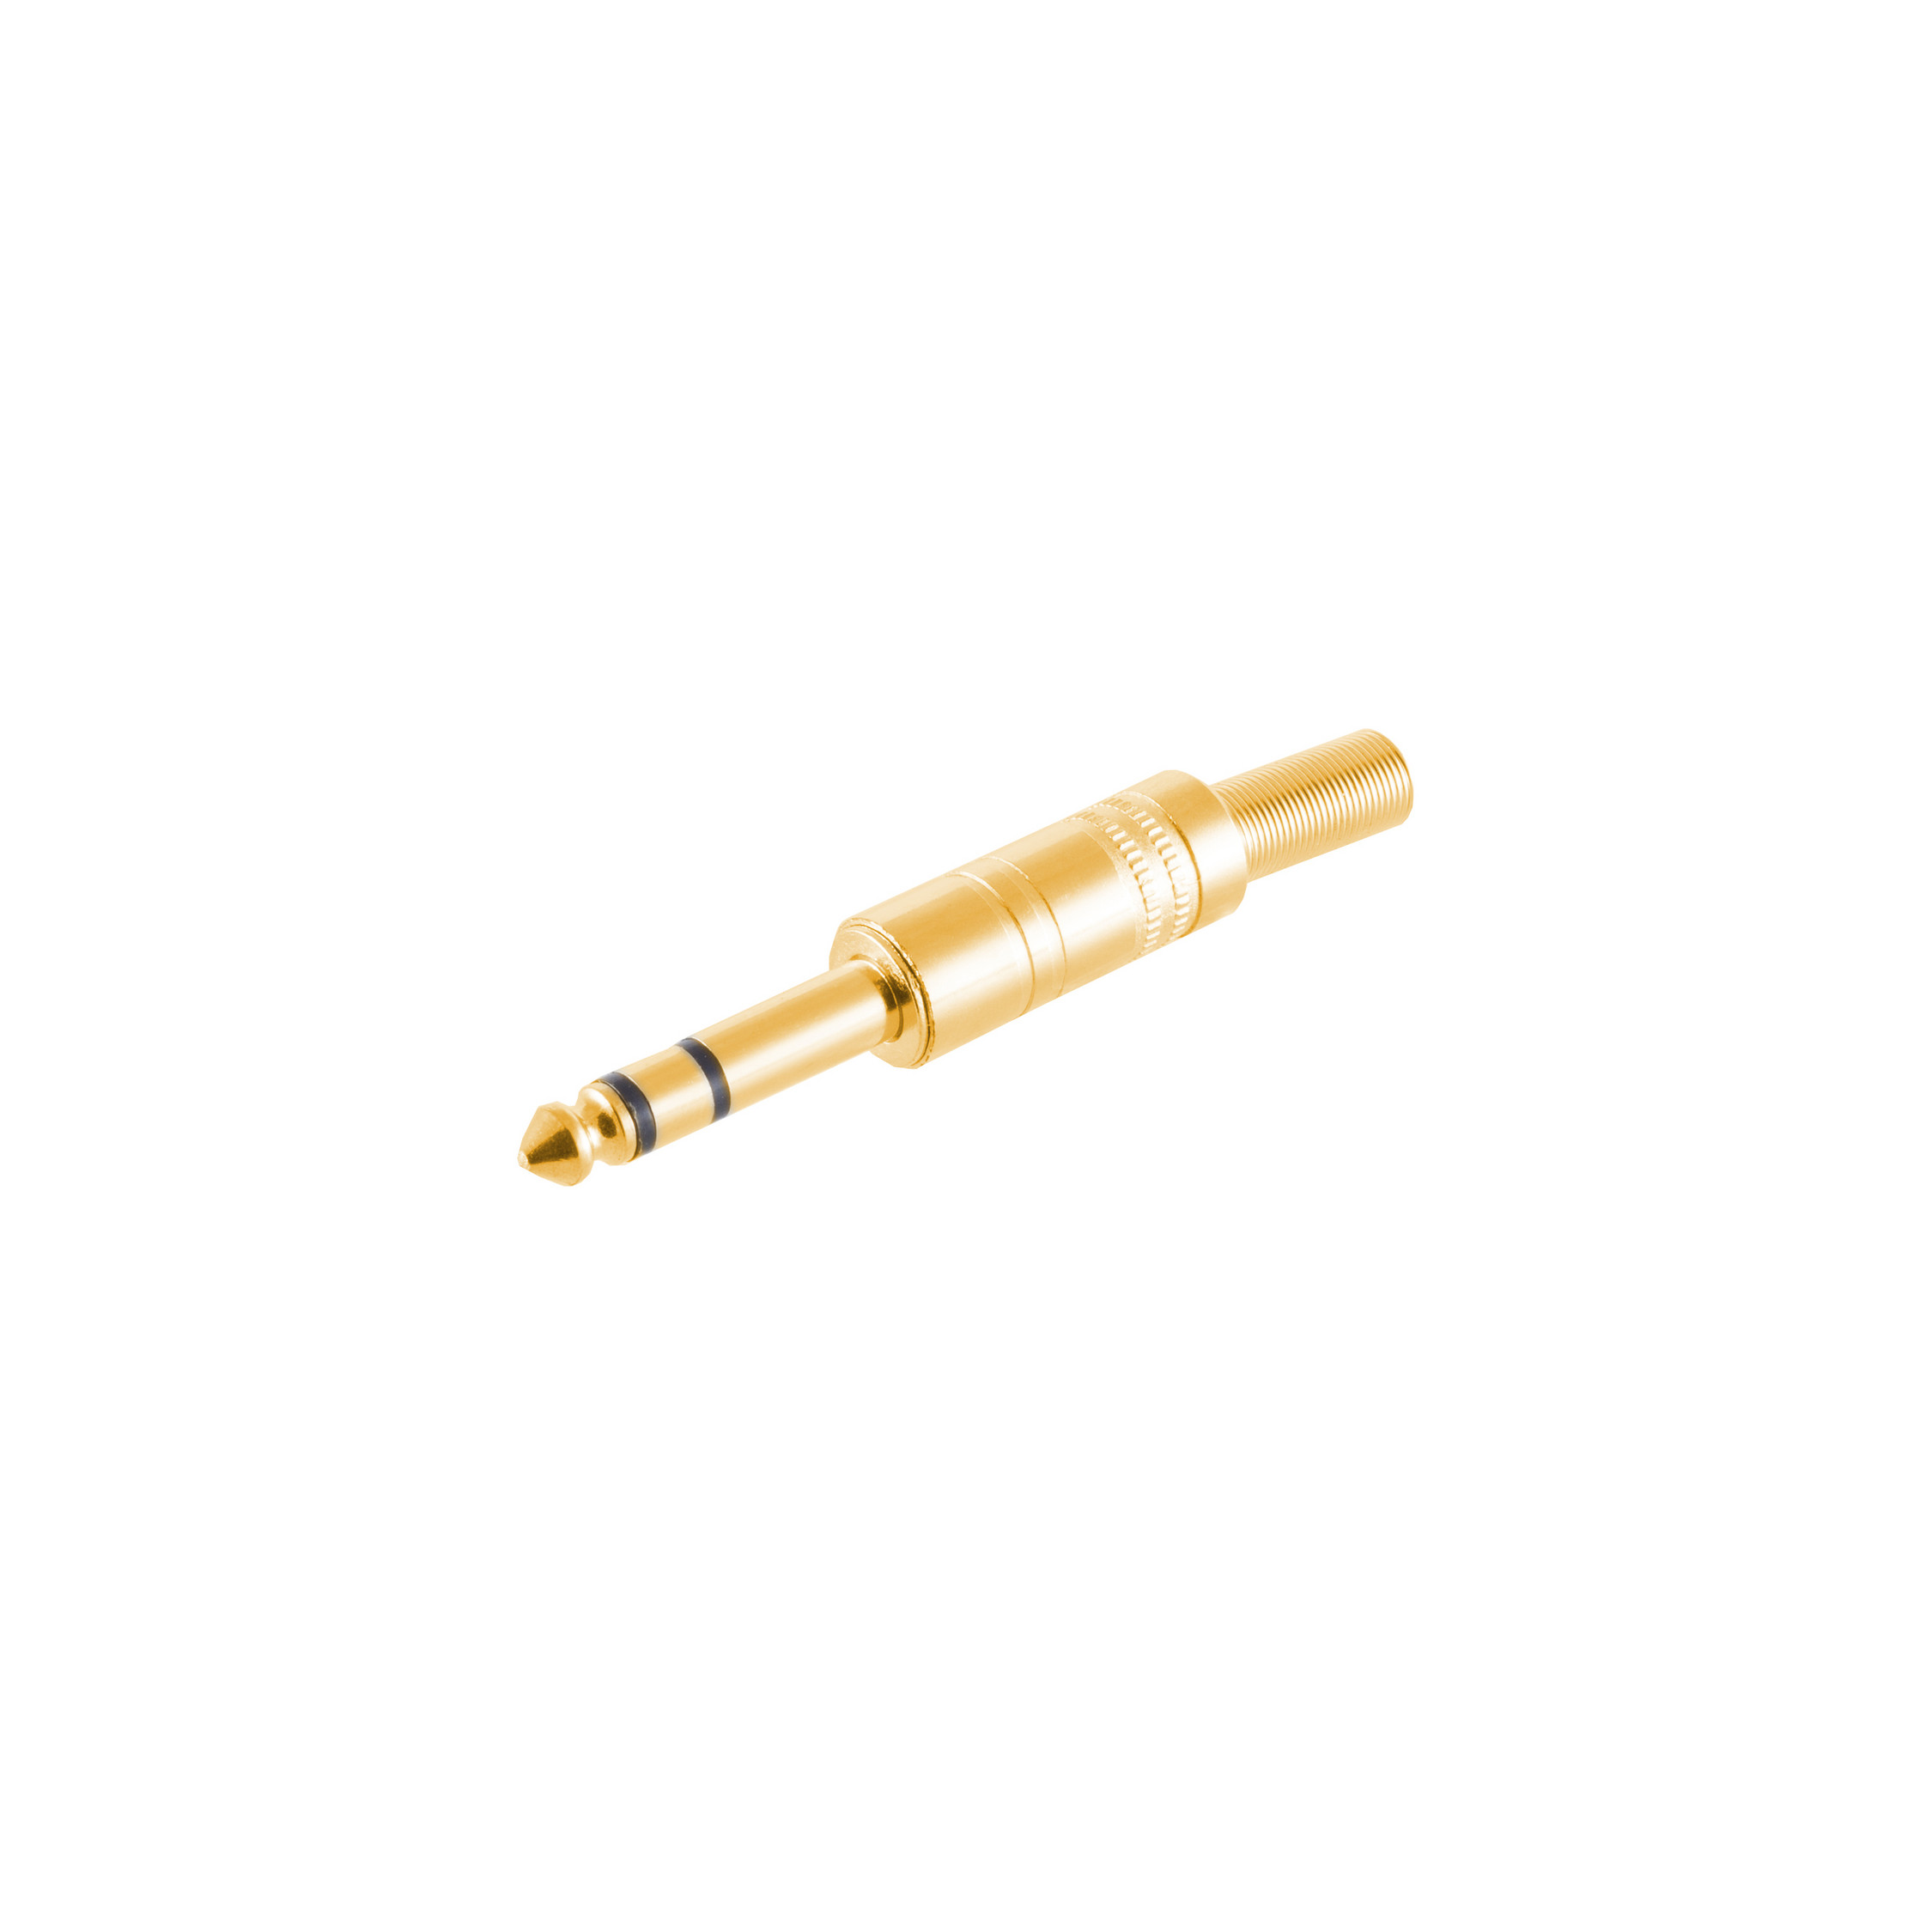 S/CONN Klinke vergoldet Stereo MAXIMUM CONNECTIVITY Klinkenstecker 6,3mm, Metall,